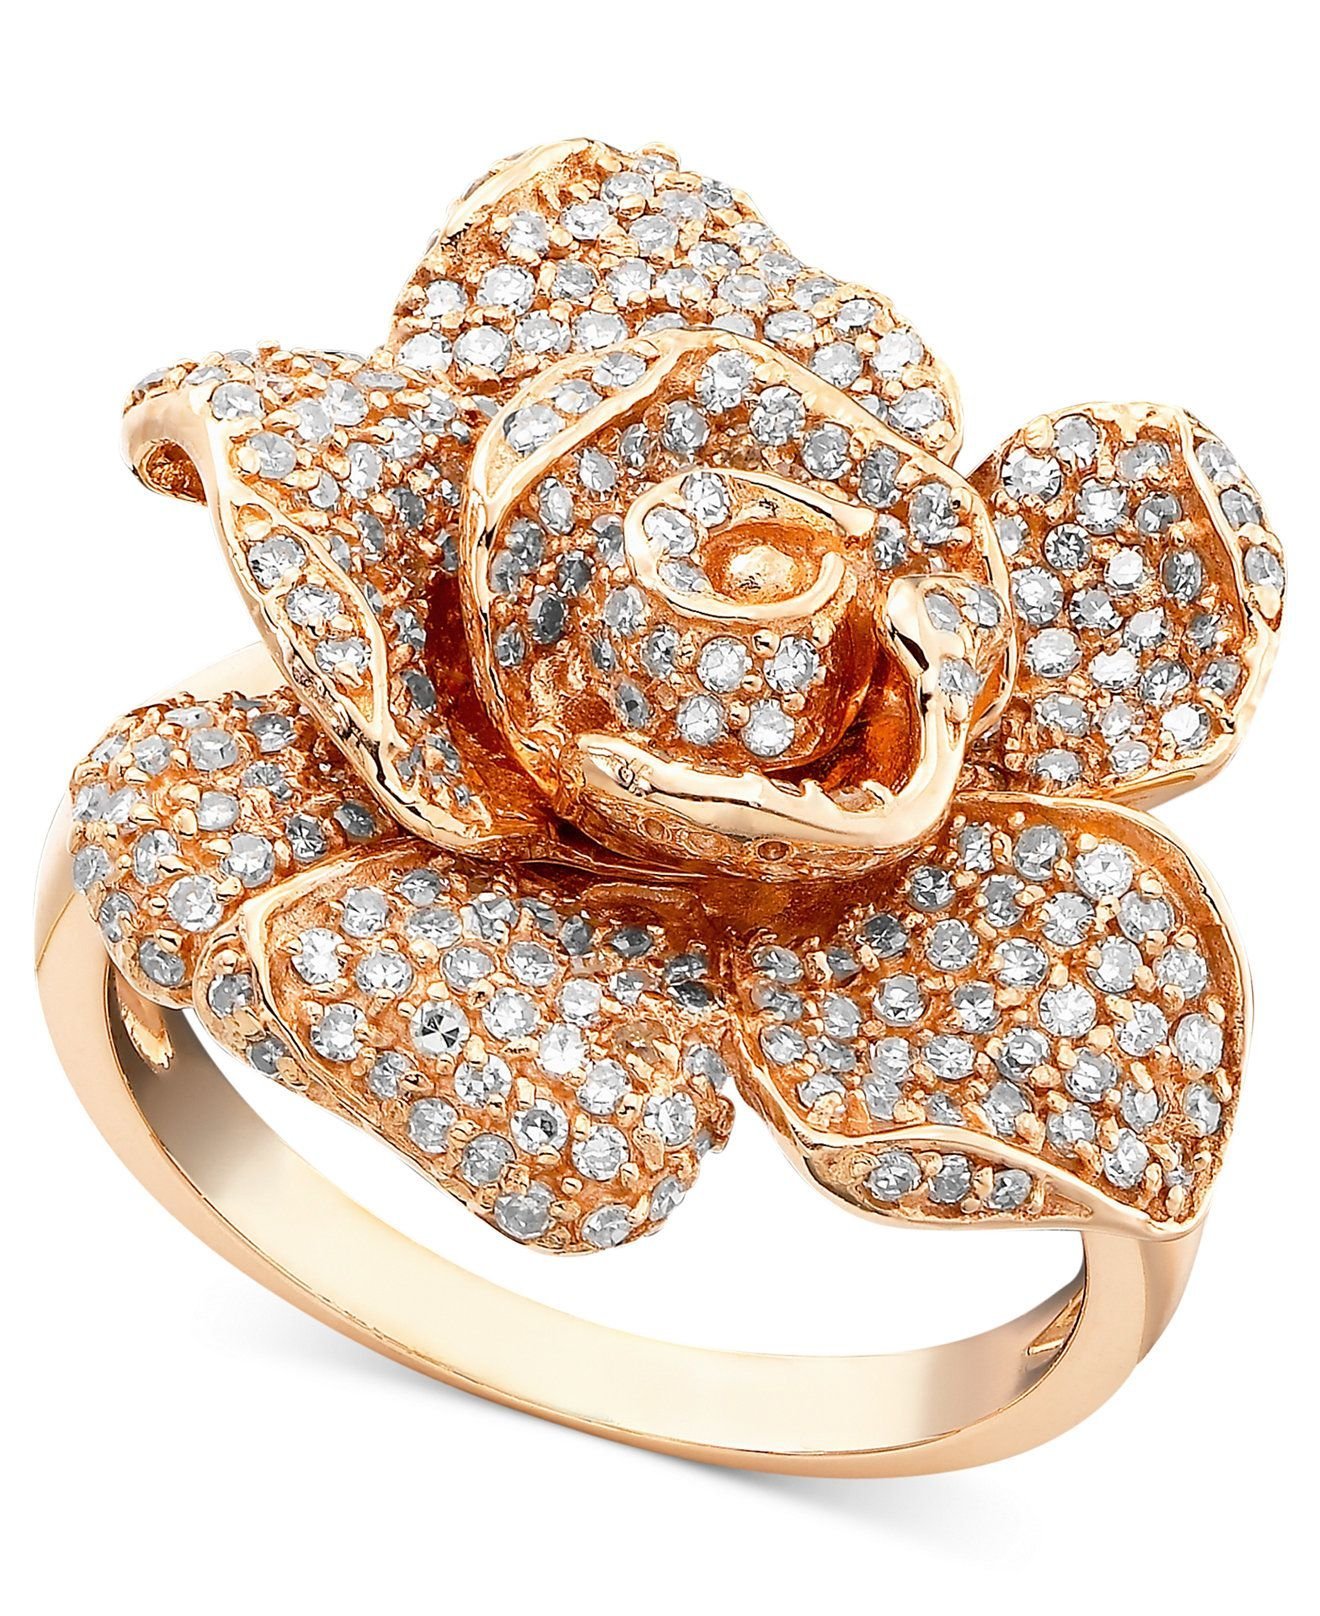 Ювелирное изделие кольцо с бриллиантом. Голд Даймонд ювелирные украшения. Кольцо золотой DG 14k 585. Кольцо цветок Санлайт.